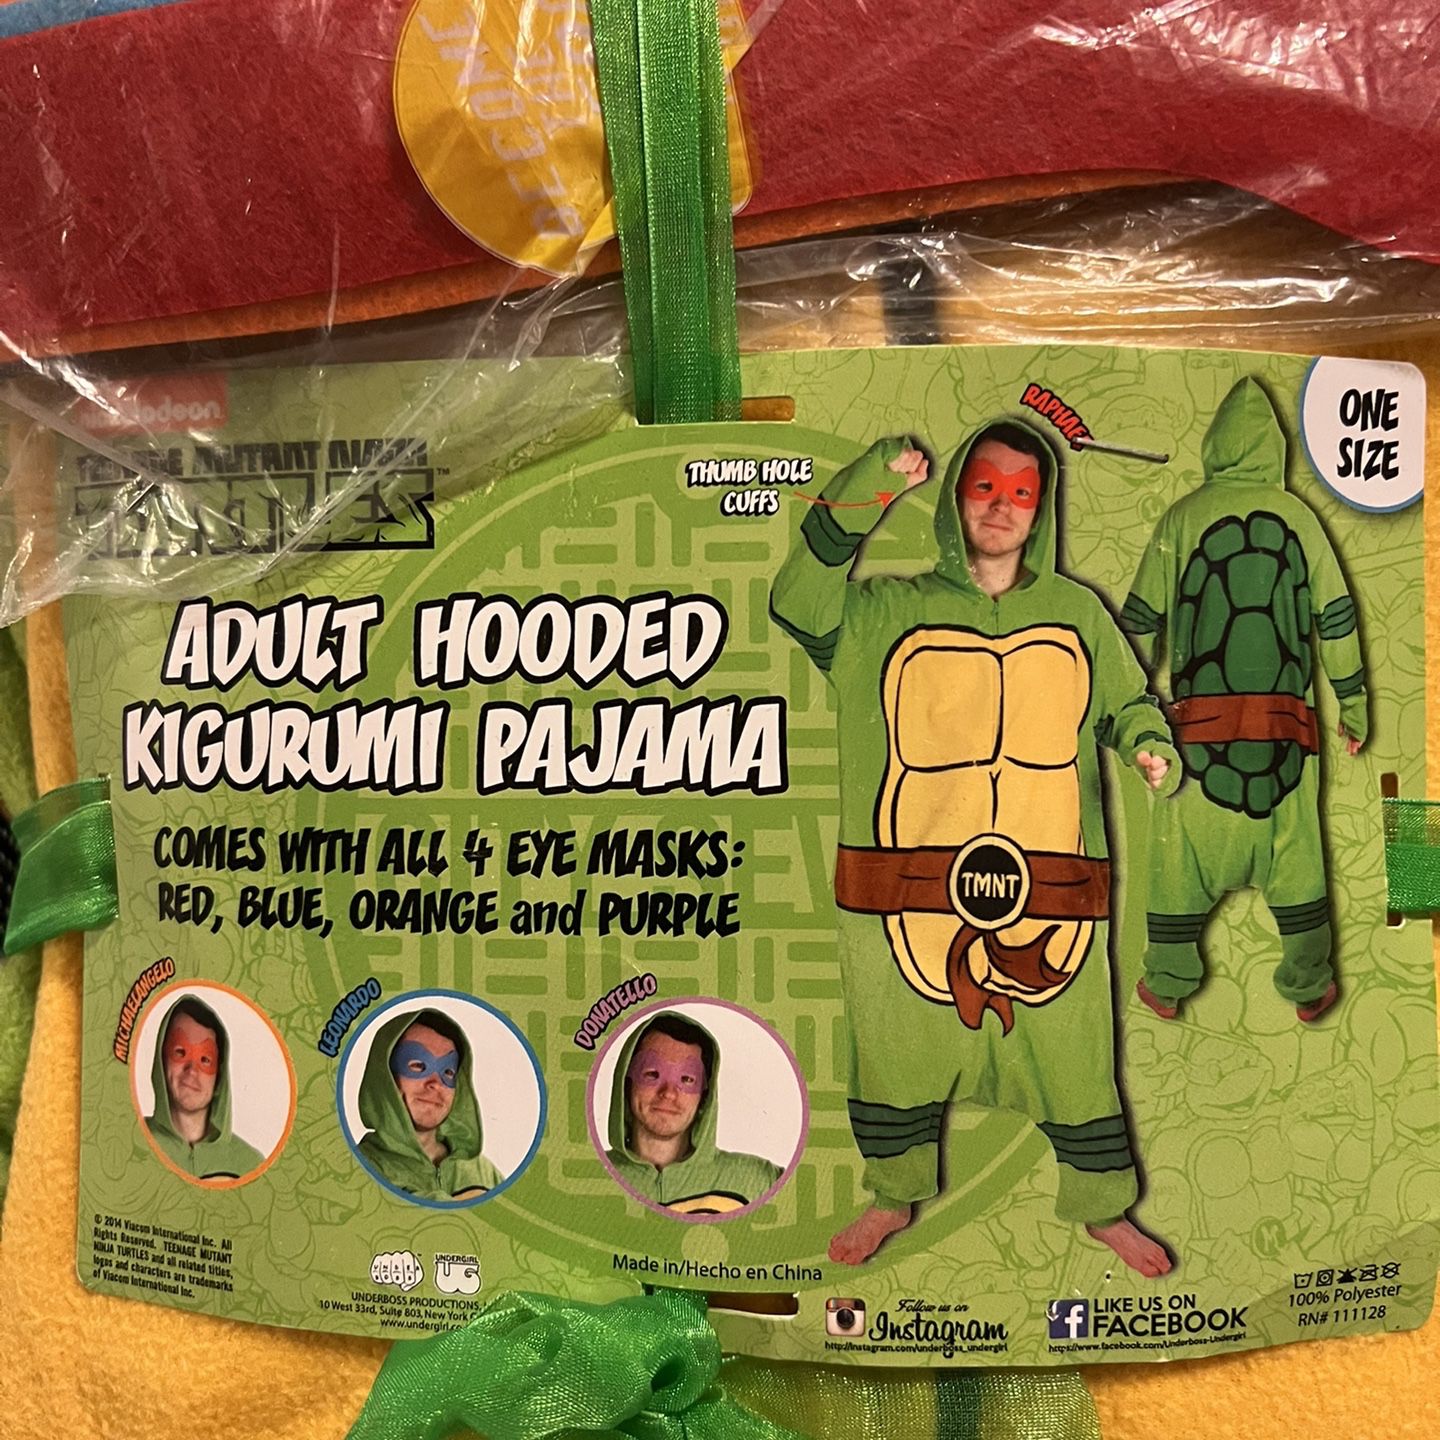 Teenage Mutant Ninja Turtles Adult Hooded Costume /Pajama for Sale